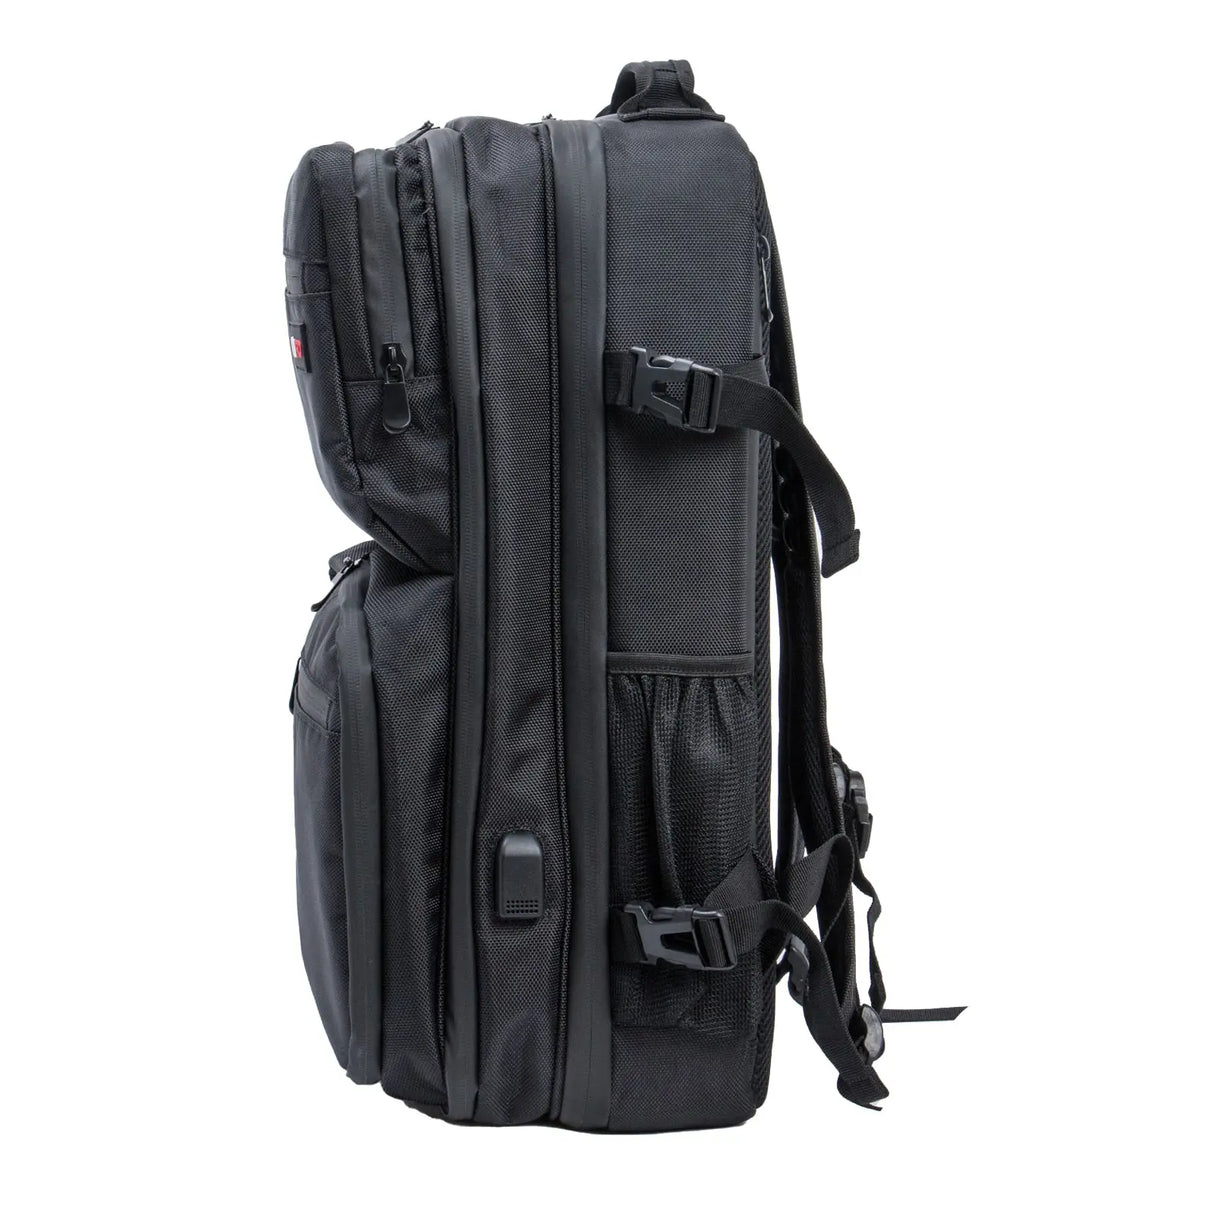 Boppr Smart Full Size Backpack